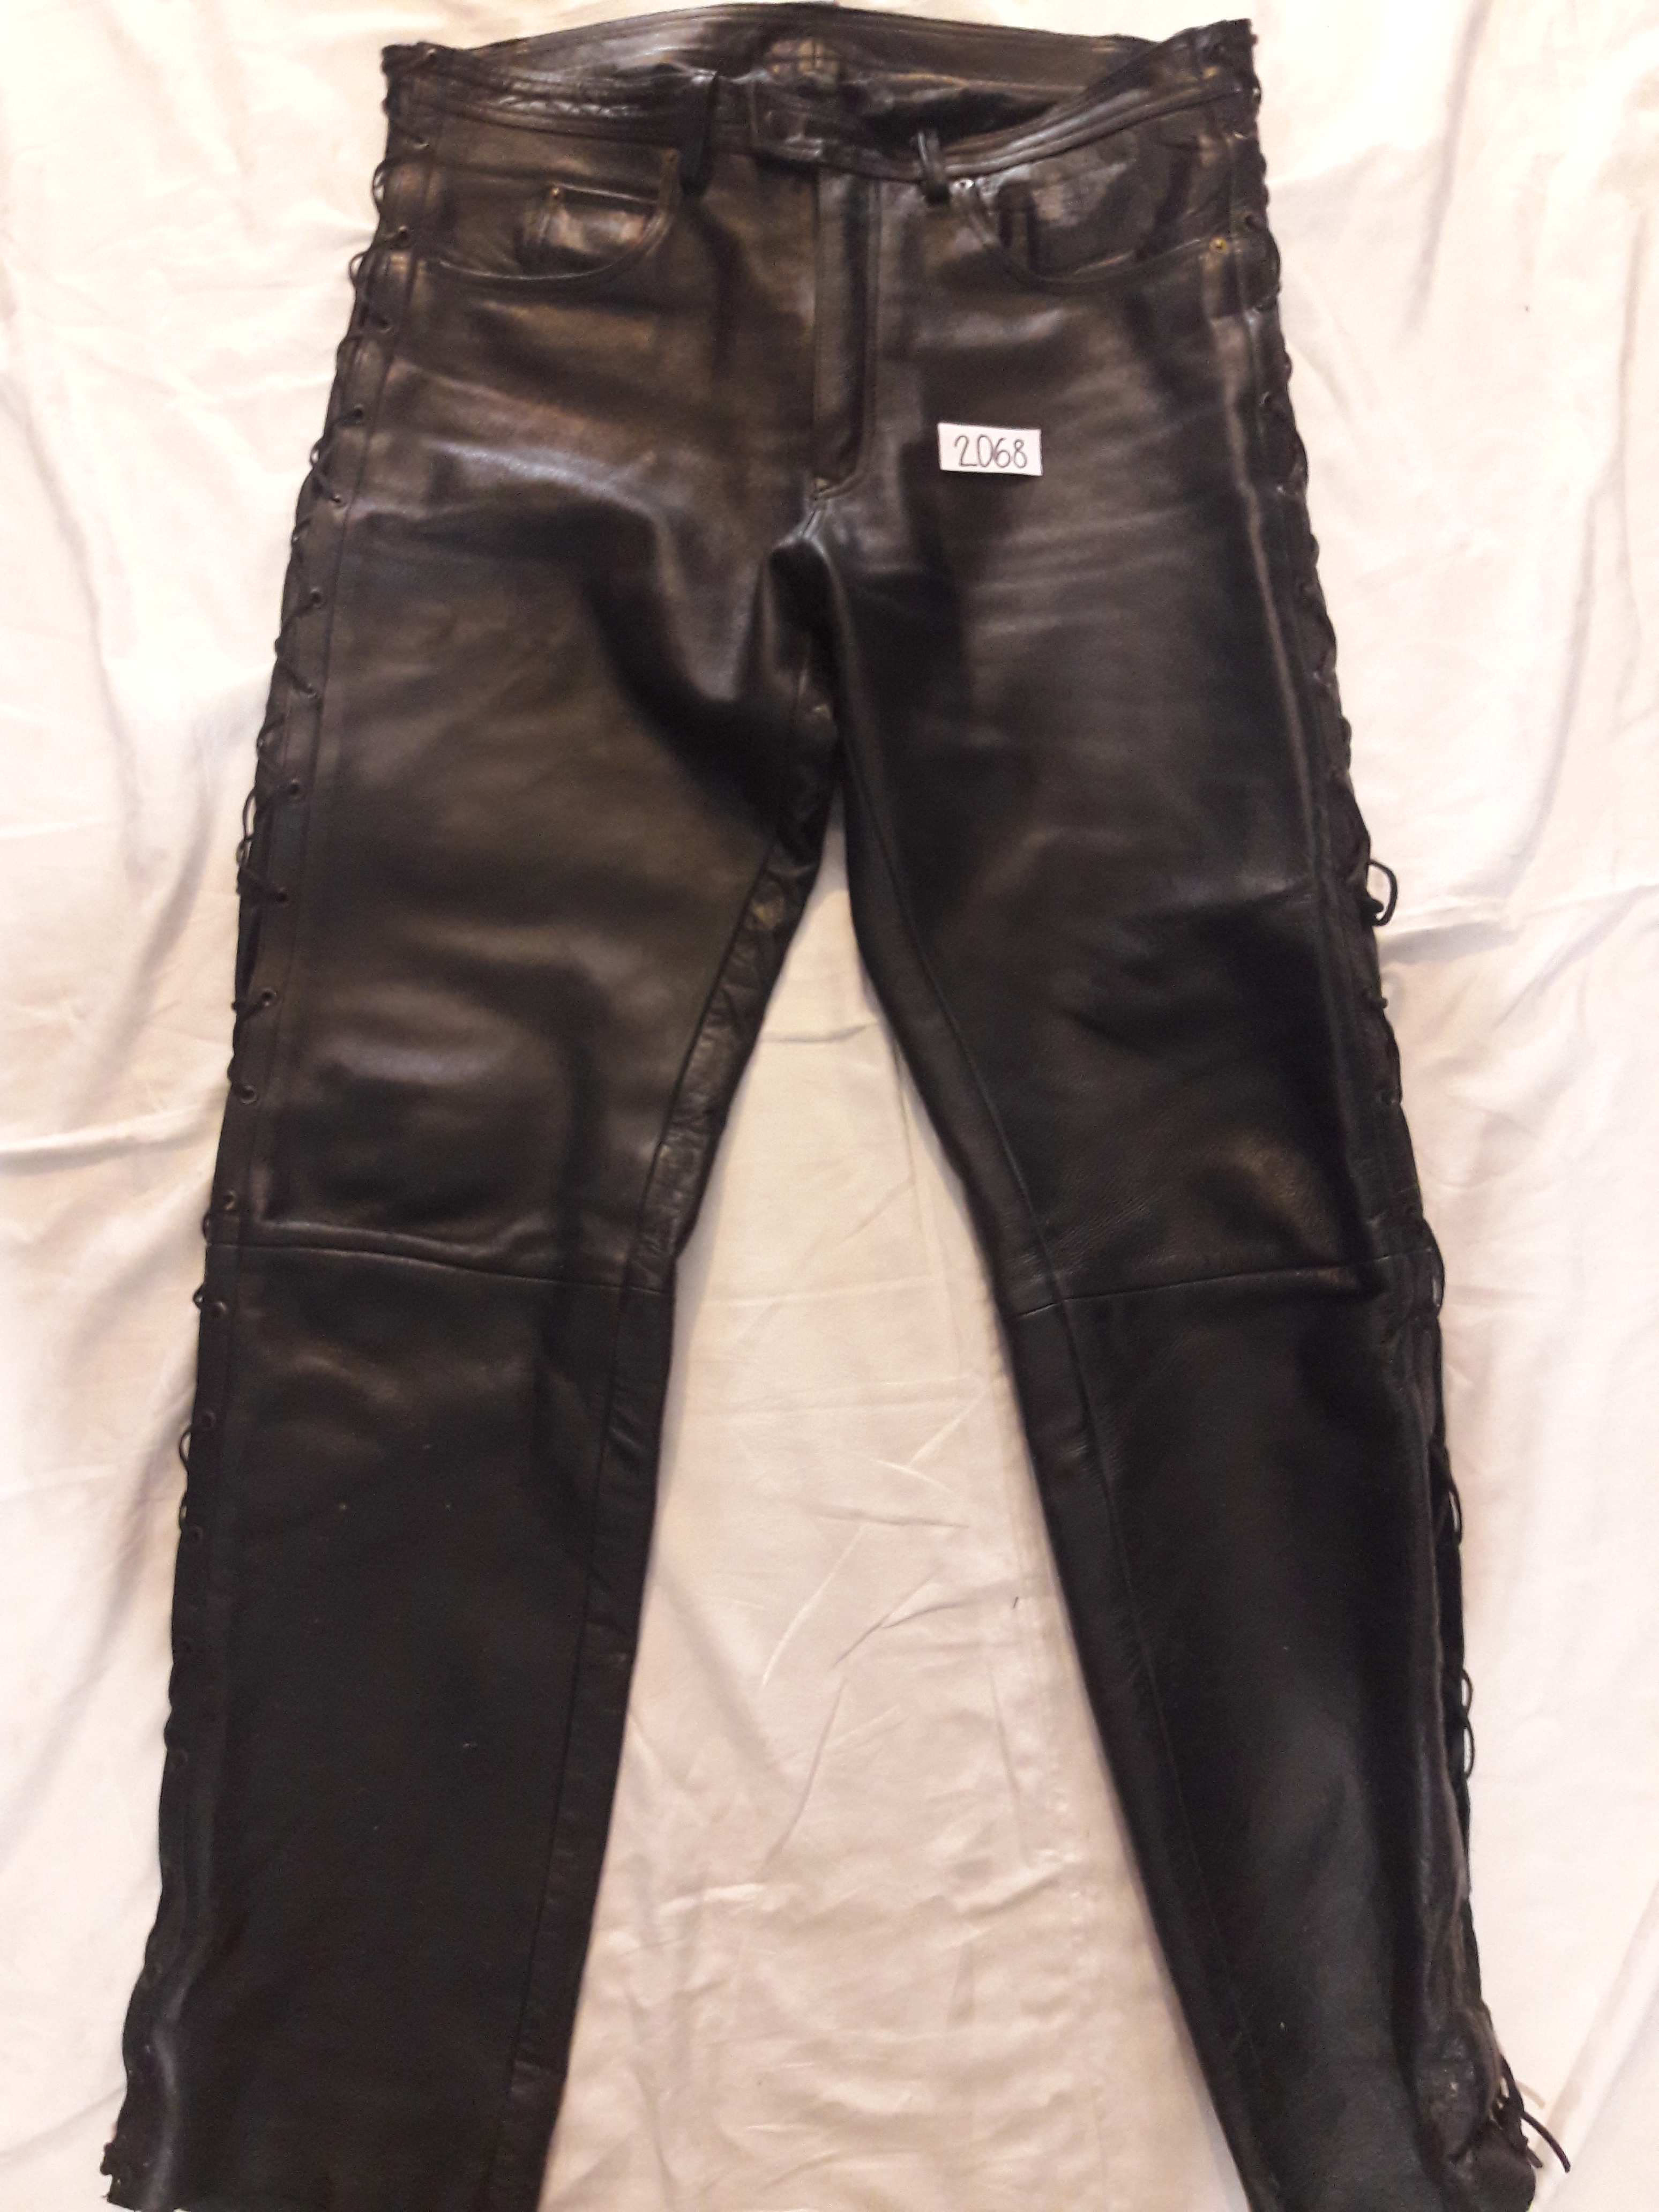 Moto kožené nohavice čierne, veľ. 3 XL, č. 2068